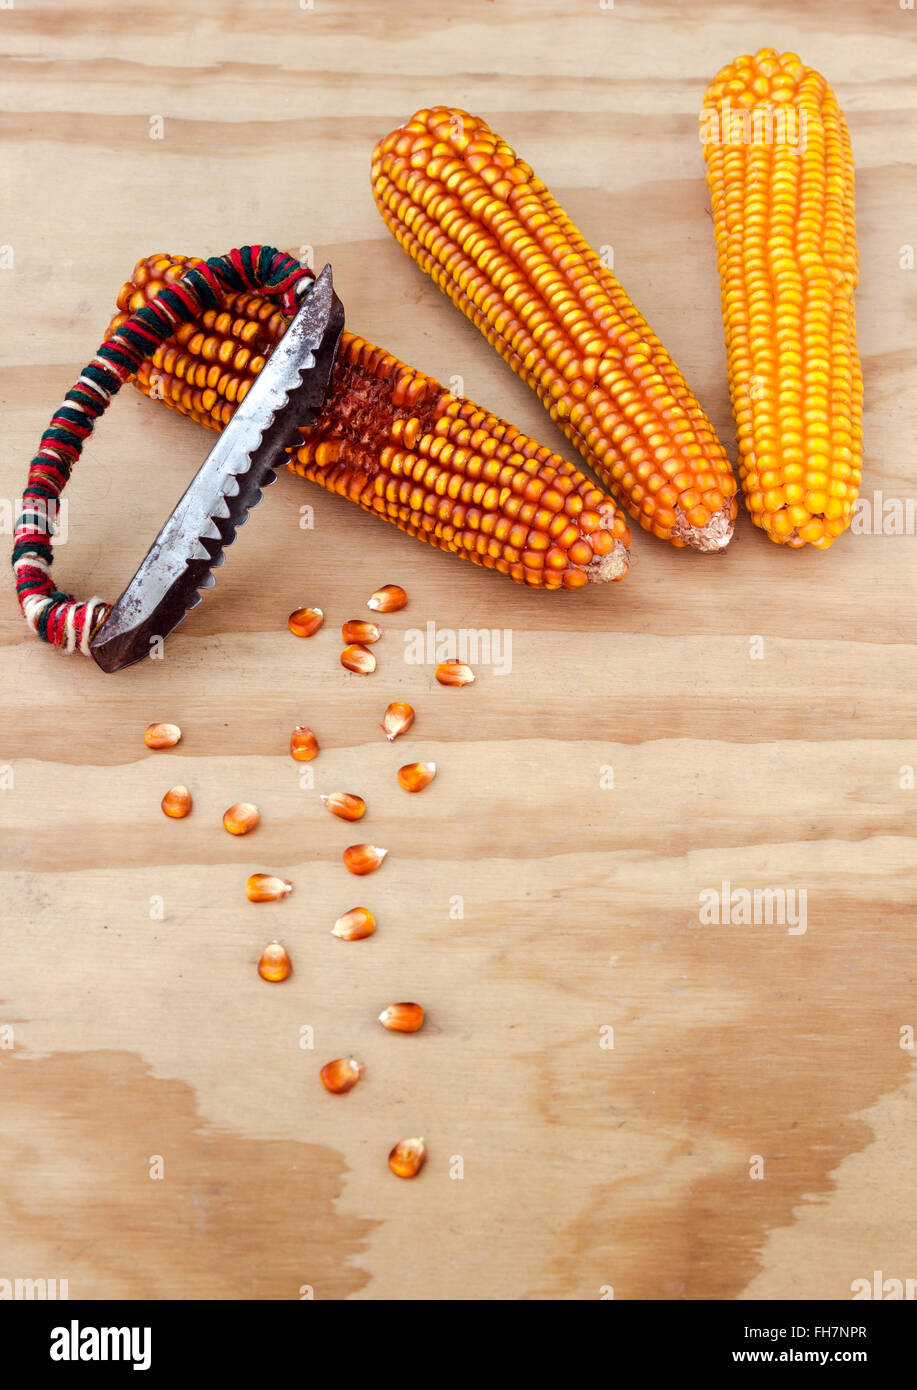 Les épis de maïs séchés avec des outils à main pour nettoyer les grains de maïs Banque D'Images